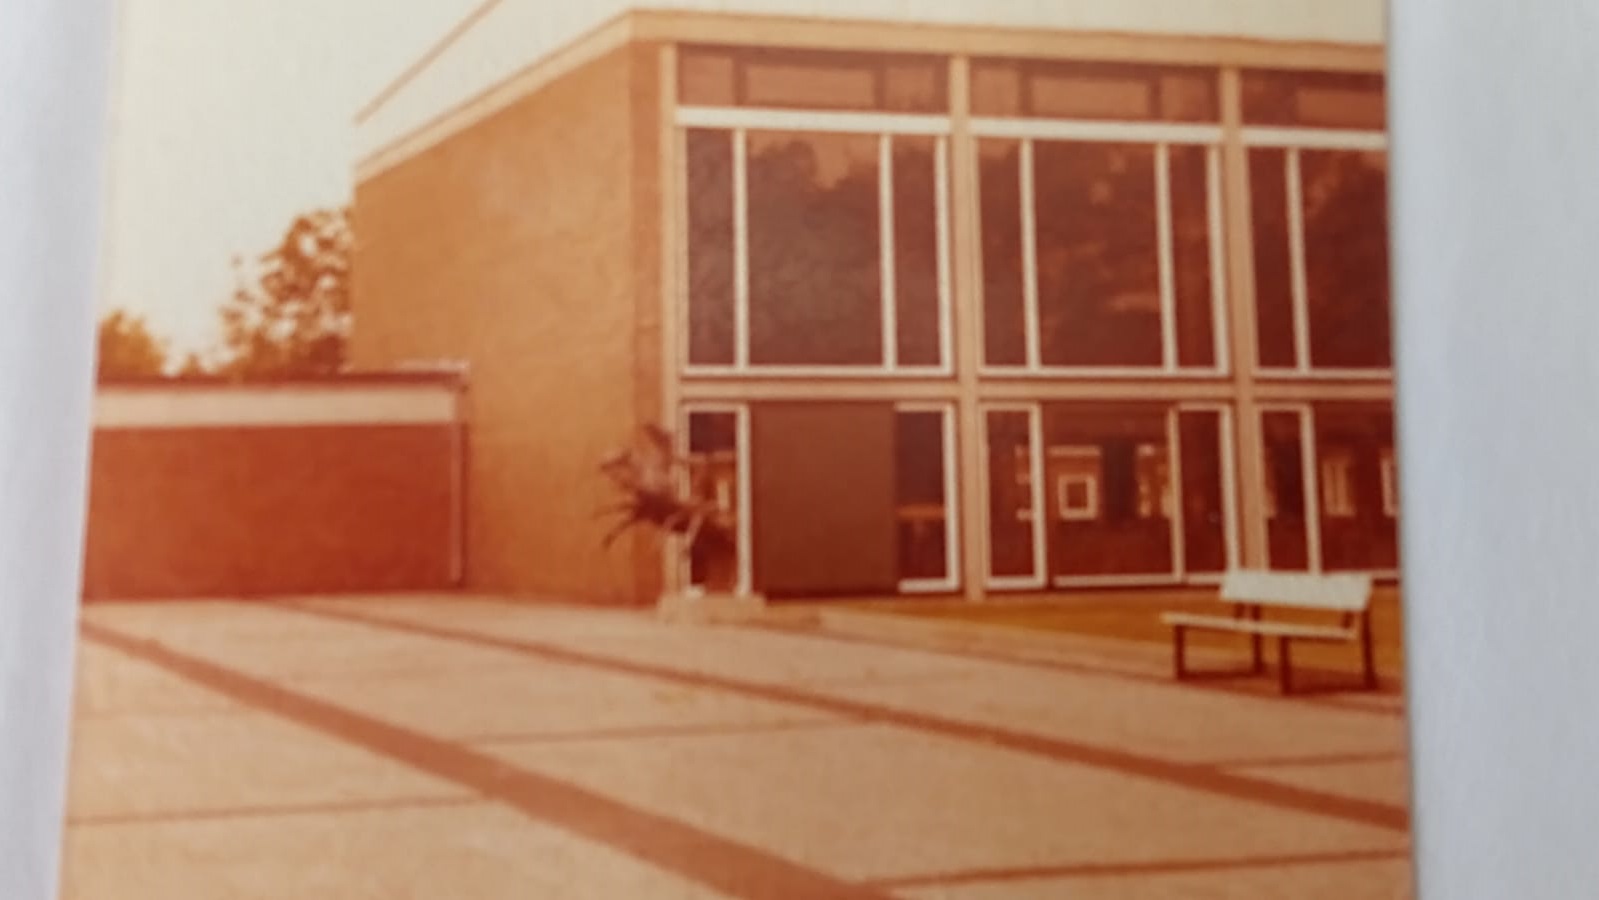 Schulgebäude damals